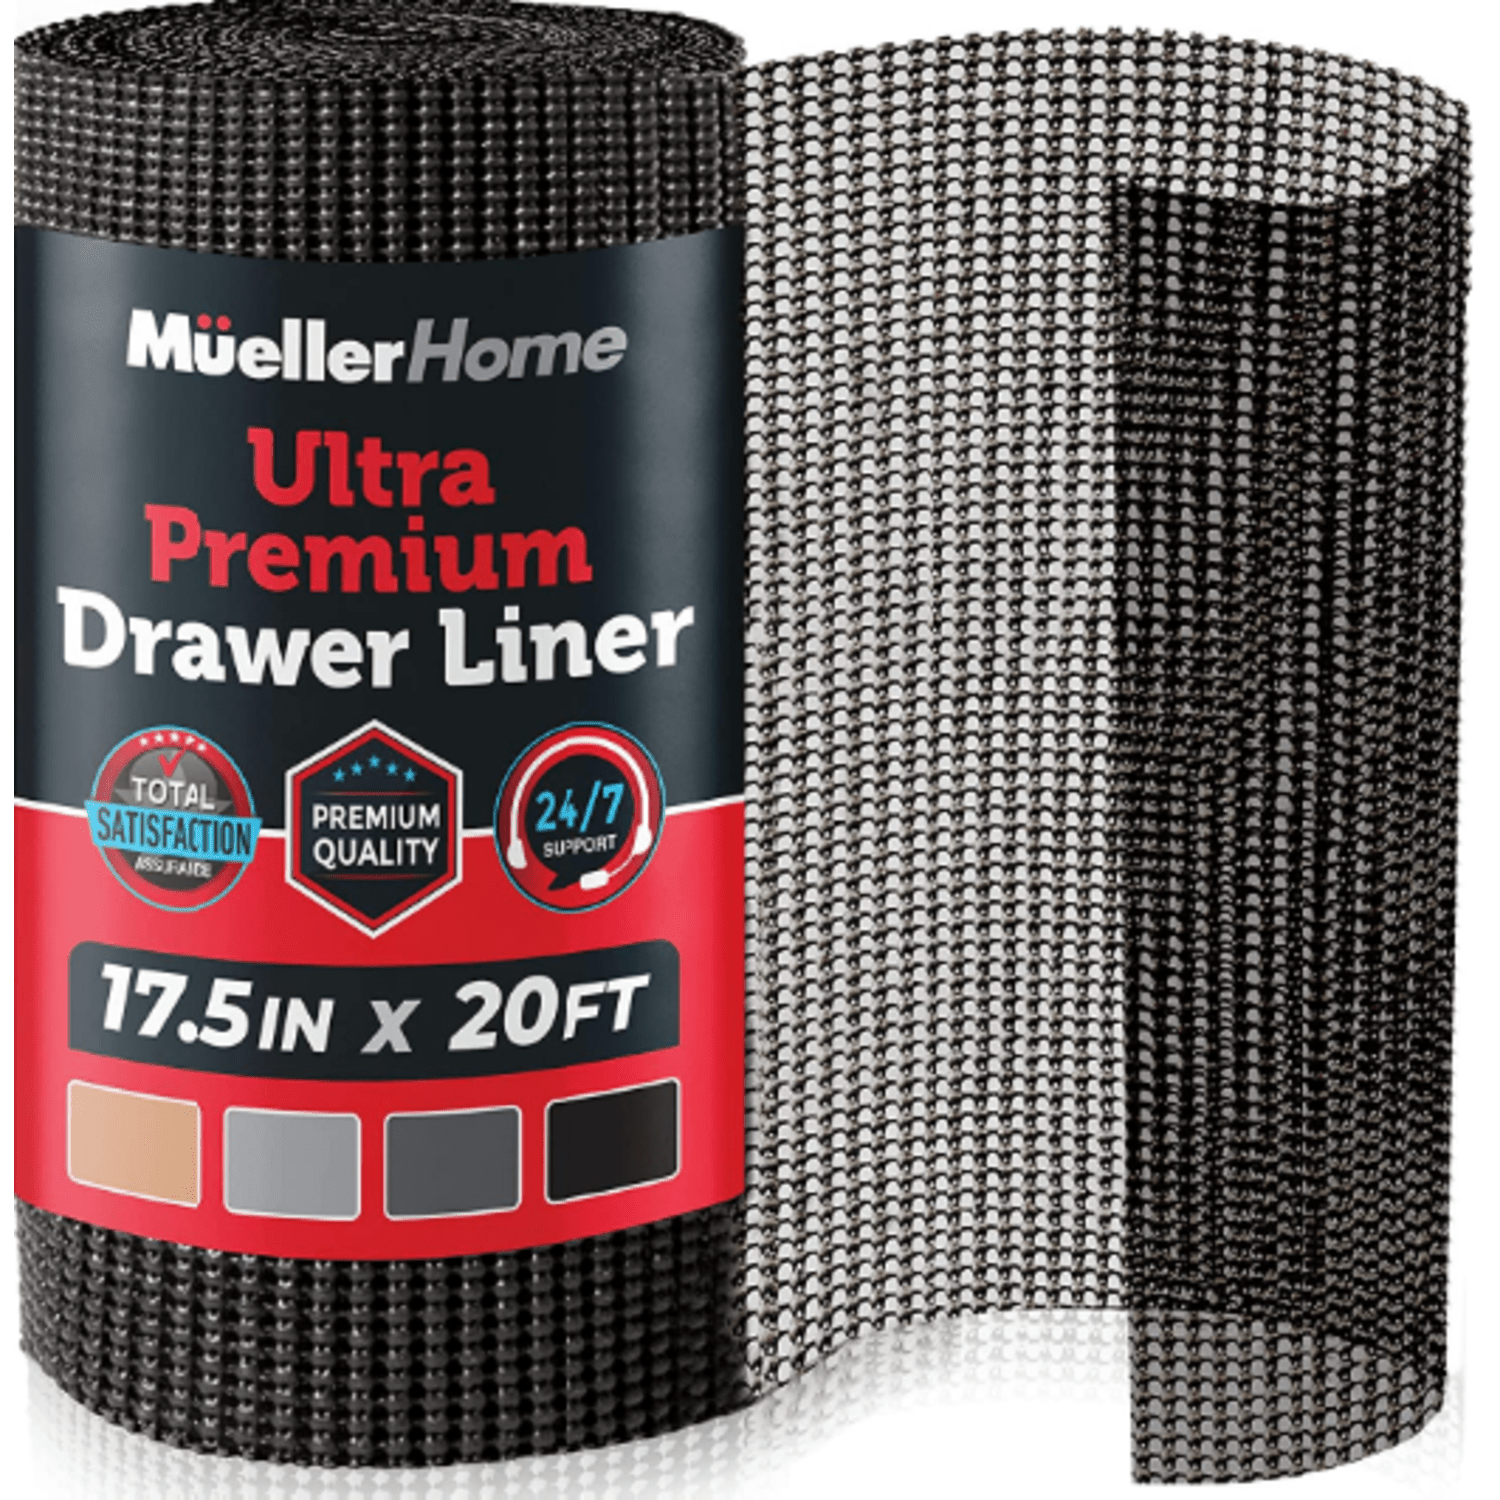 muellerhome_Ultra-Premium-Drawer-Liner-17.5in-x-20ft-Black